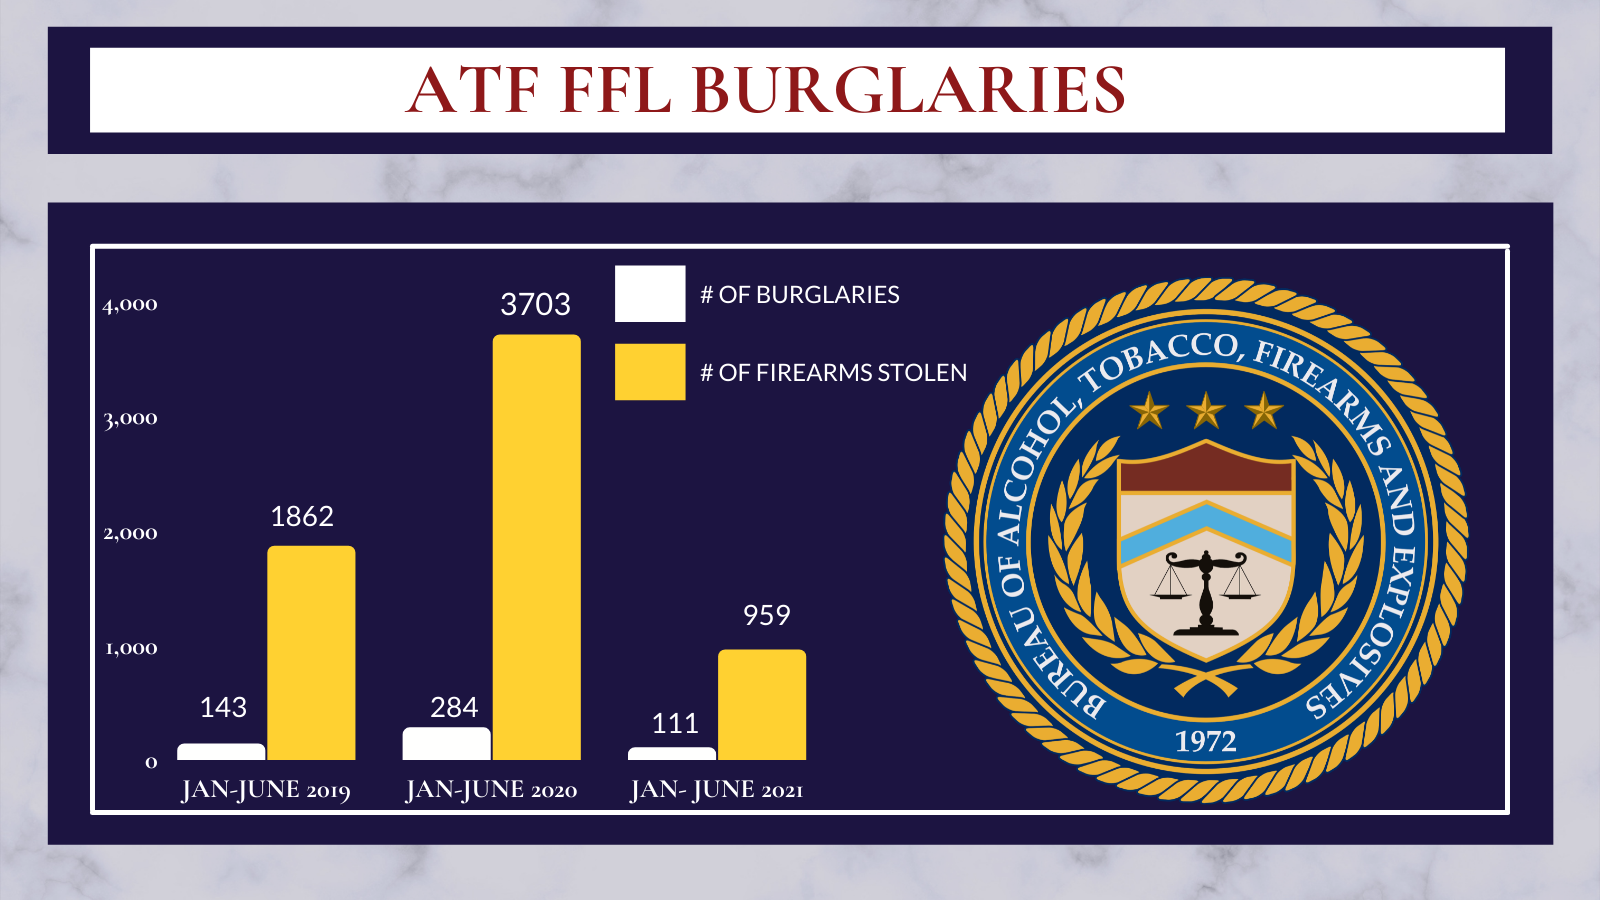 ATF FFL Burglaries: From January to June 2019, 143 burglaries and 1862 firearms stolen. From Jan to June 2020, 284 burglaries and 3703 firearms stolen. From January to June 2021, 111 burglaries and 959 firearms stolen. 